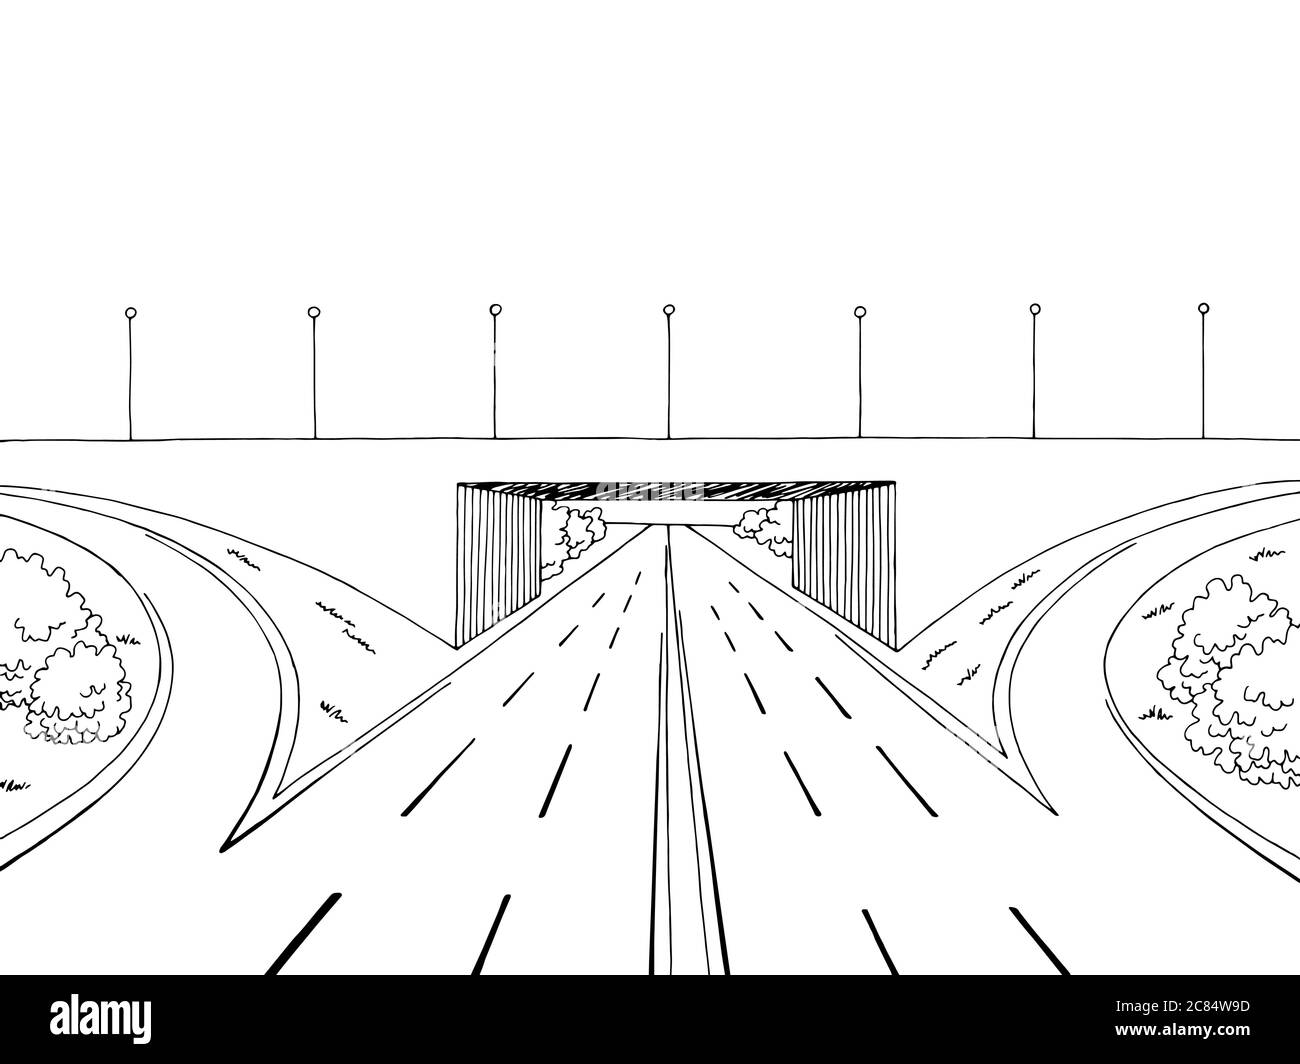 Autobahn überqueren Brücke Straße Grafik schwarz weiß Landschaft Skizze Illustration Vektor Stock Vektor